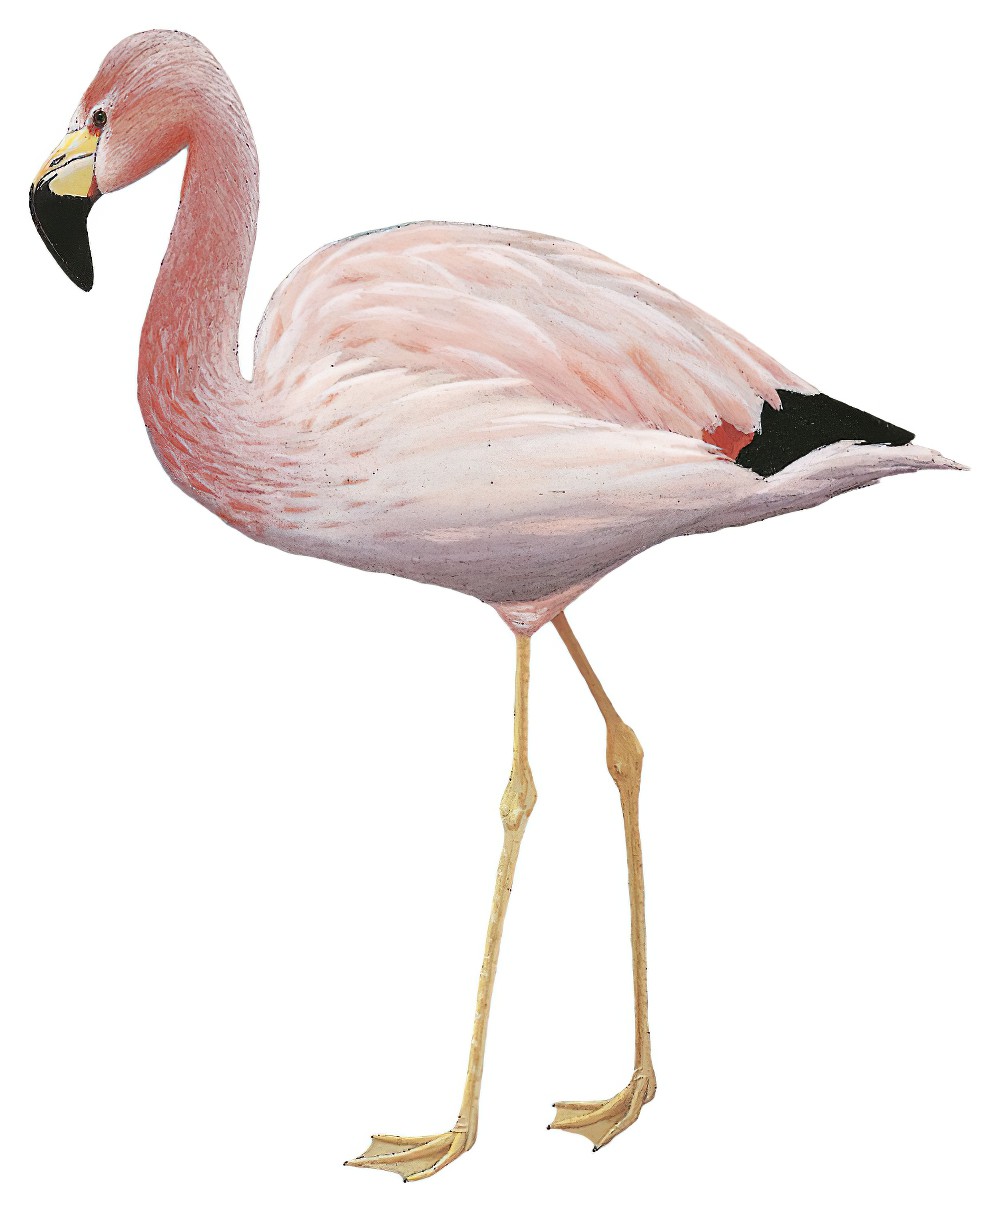 Andean Flamingo / Phoenicoparrus andinus